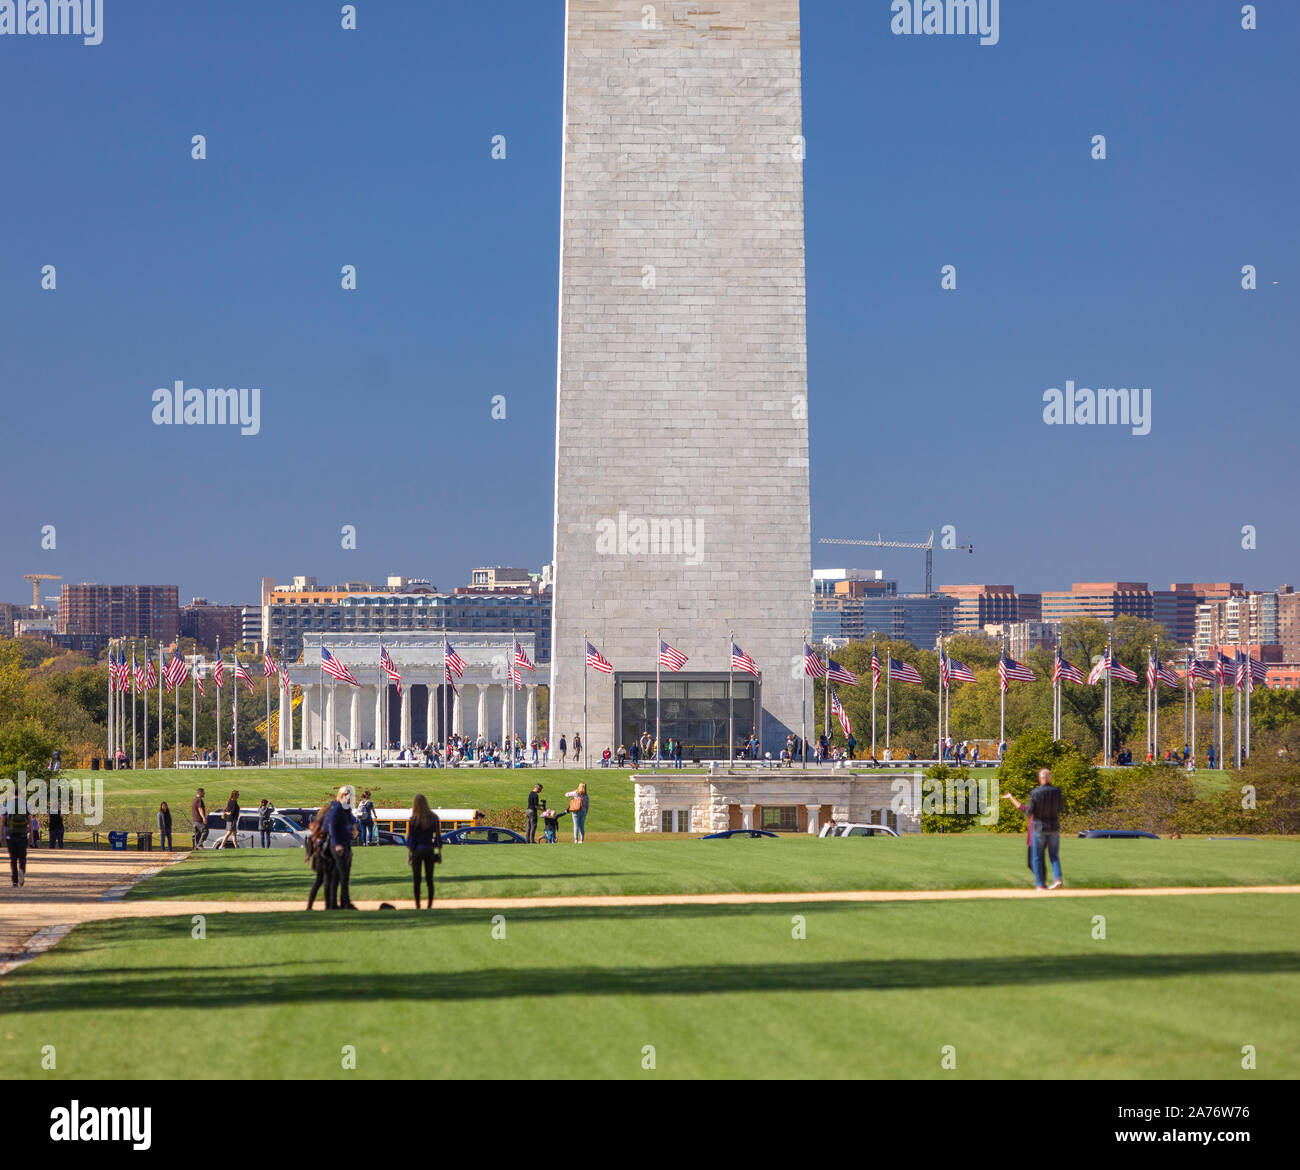 WASHINGTON, DC, EE.UU. - El Monumento a Washington y la gente caminando en el National Mall. Foto de stock